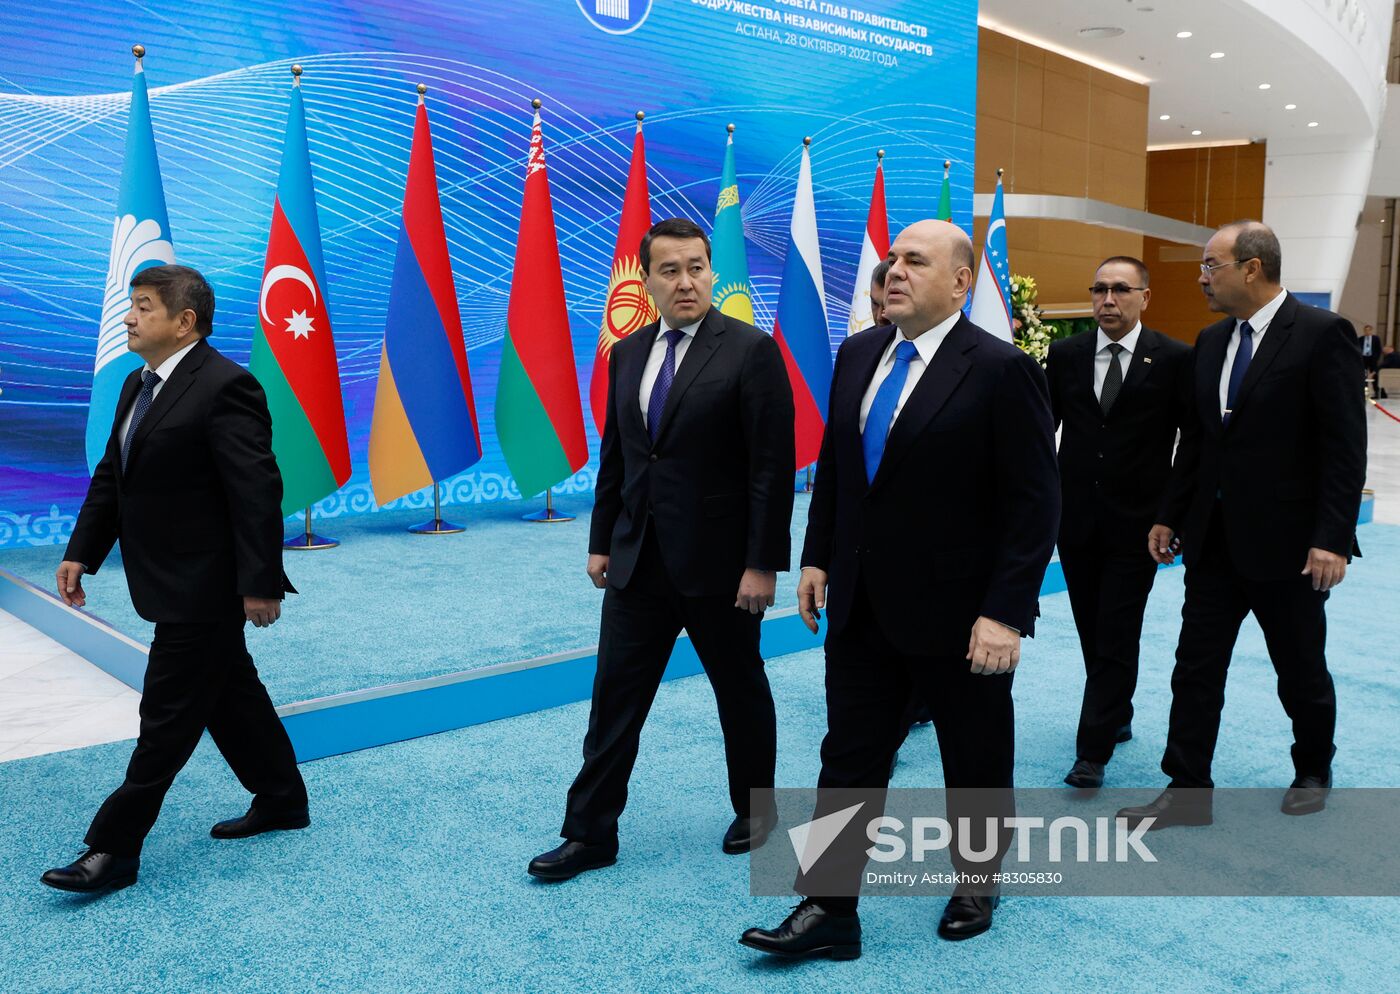 Kazakhstan CIS Government Heads Council